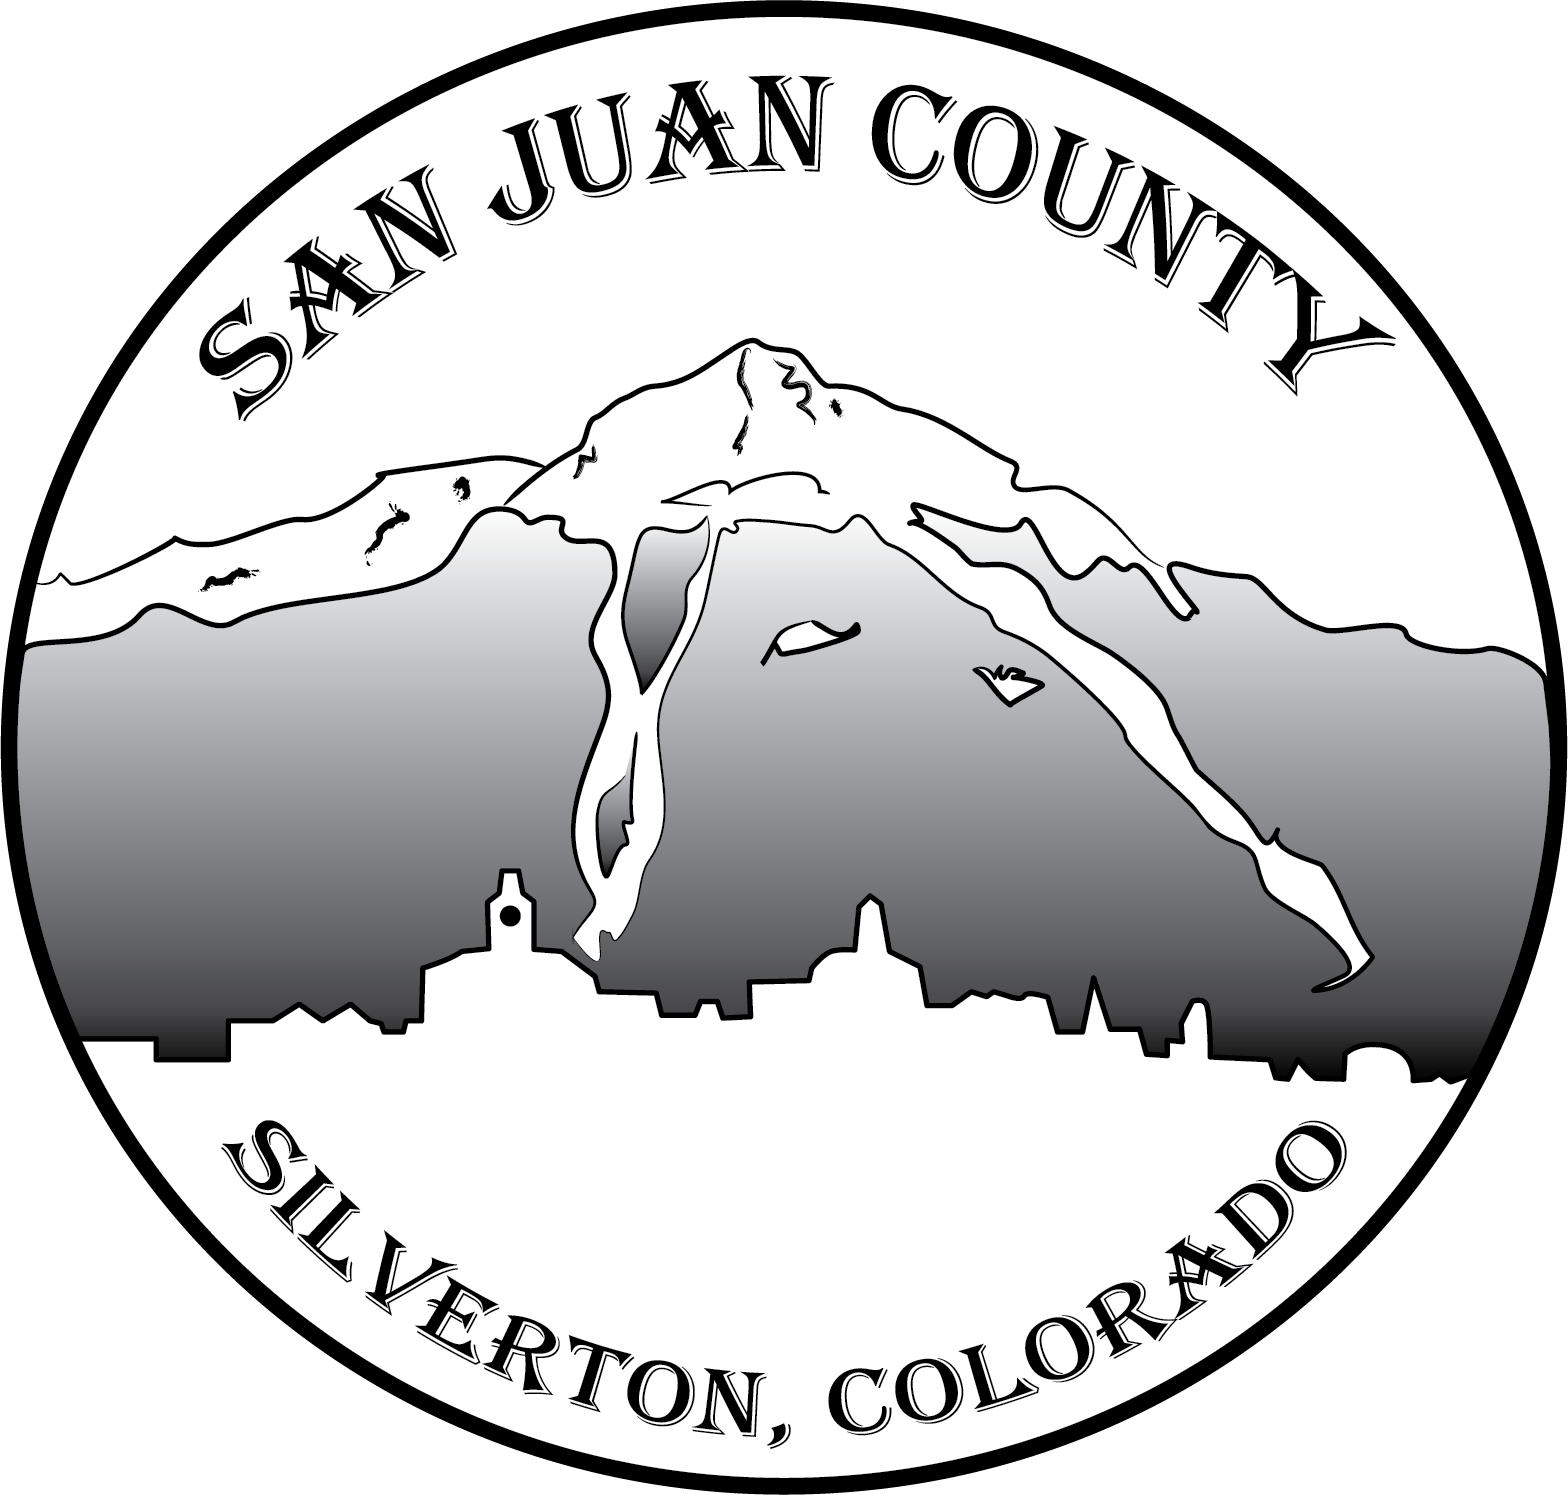 San Juan County Logo